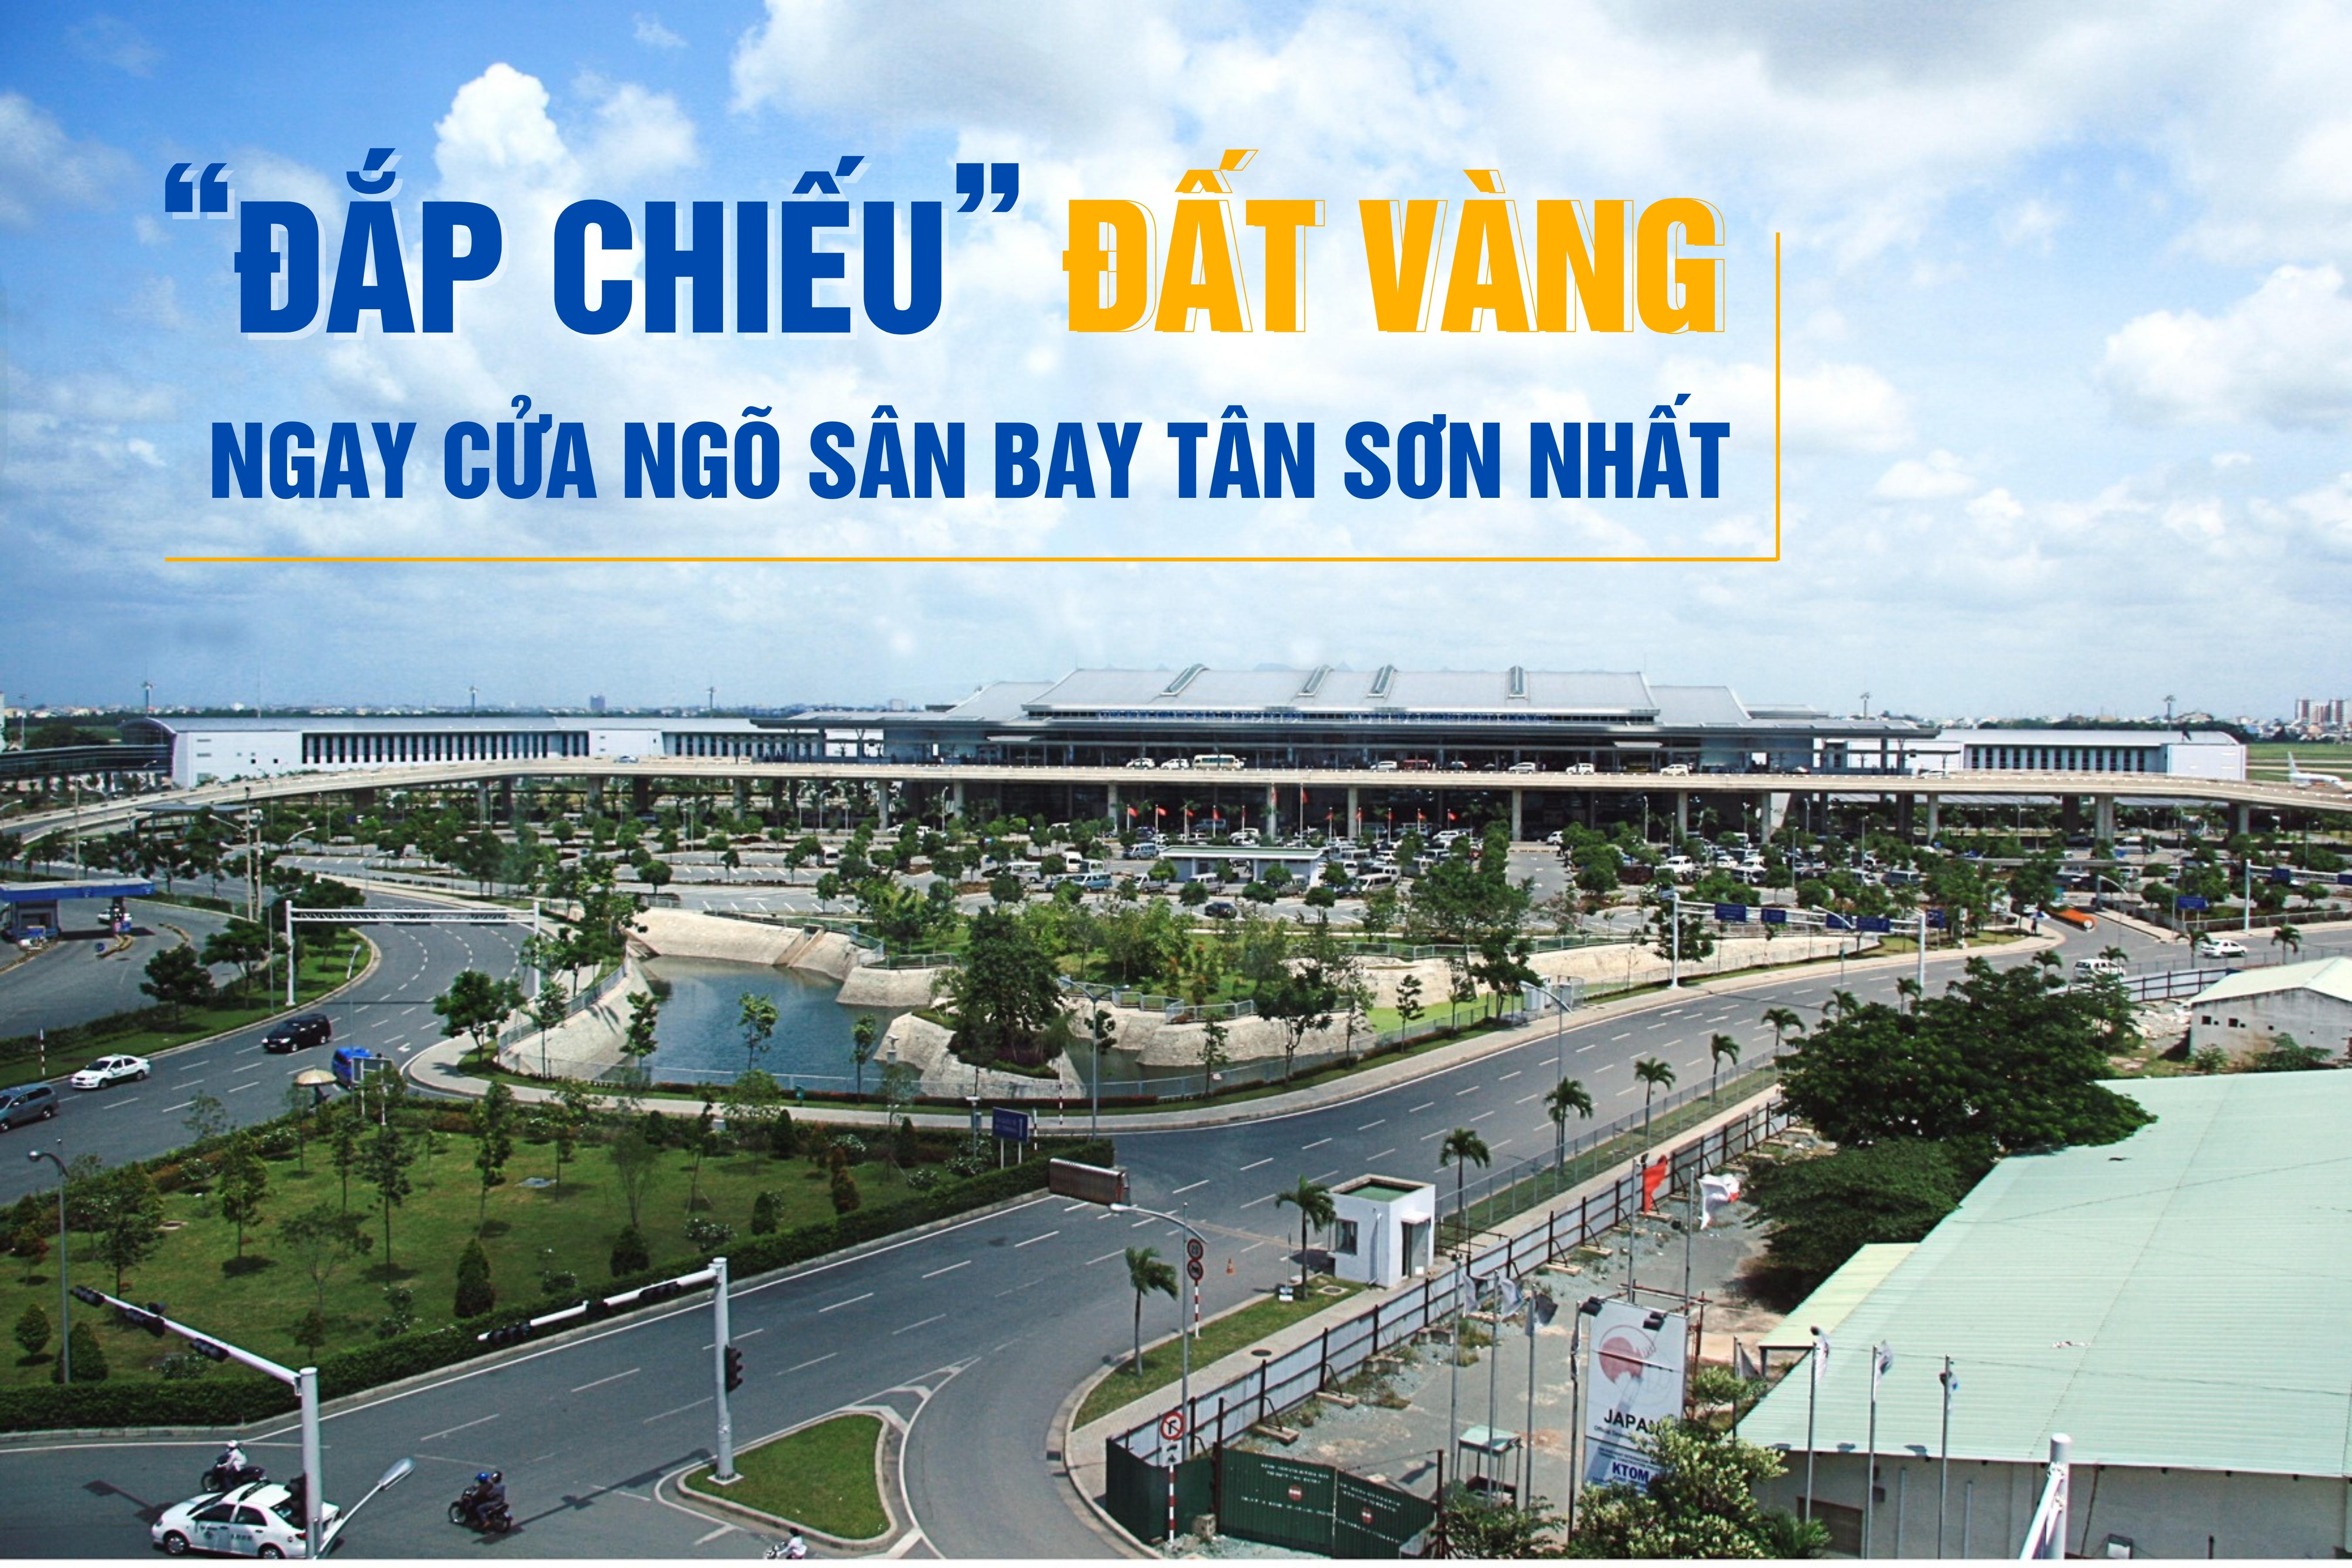 “Đắp chiếu” đất vàng ngay cửa ngõ sân bay Tân Sơn Nhất